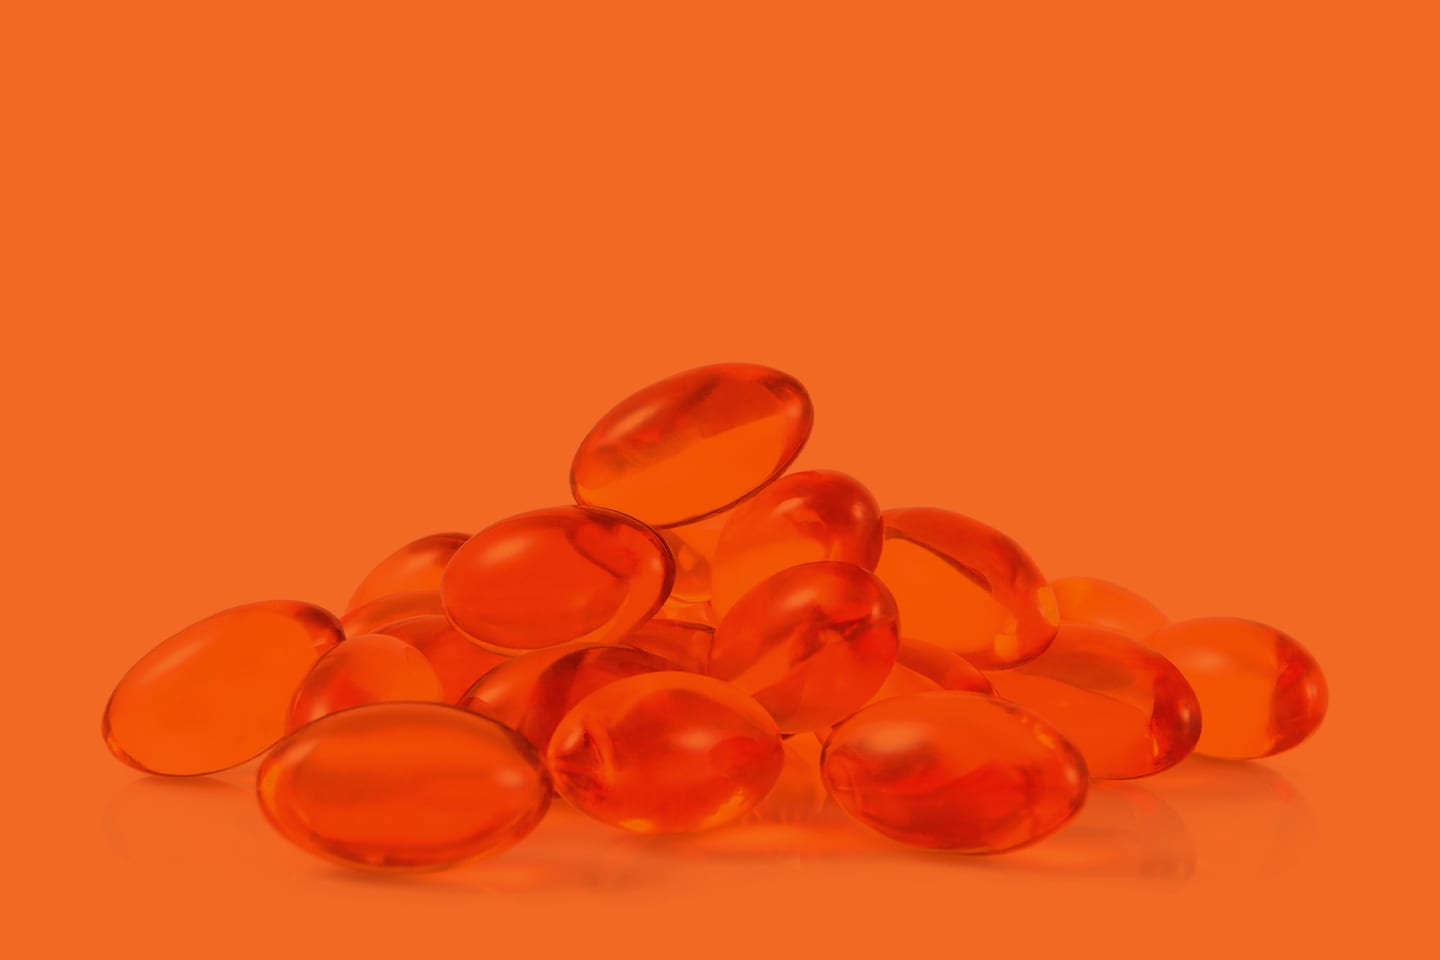 fish oil supplement vitamins on orange background